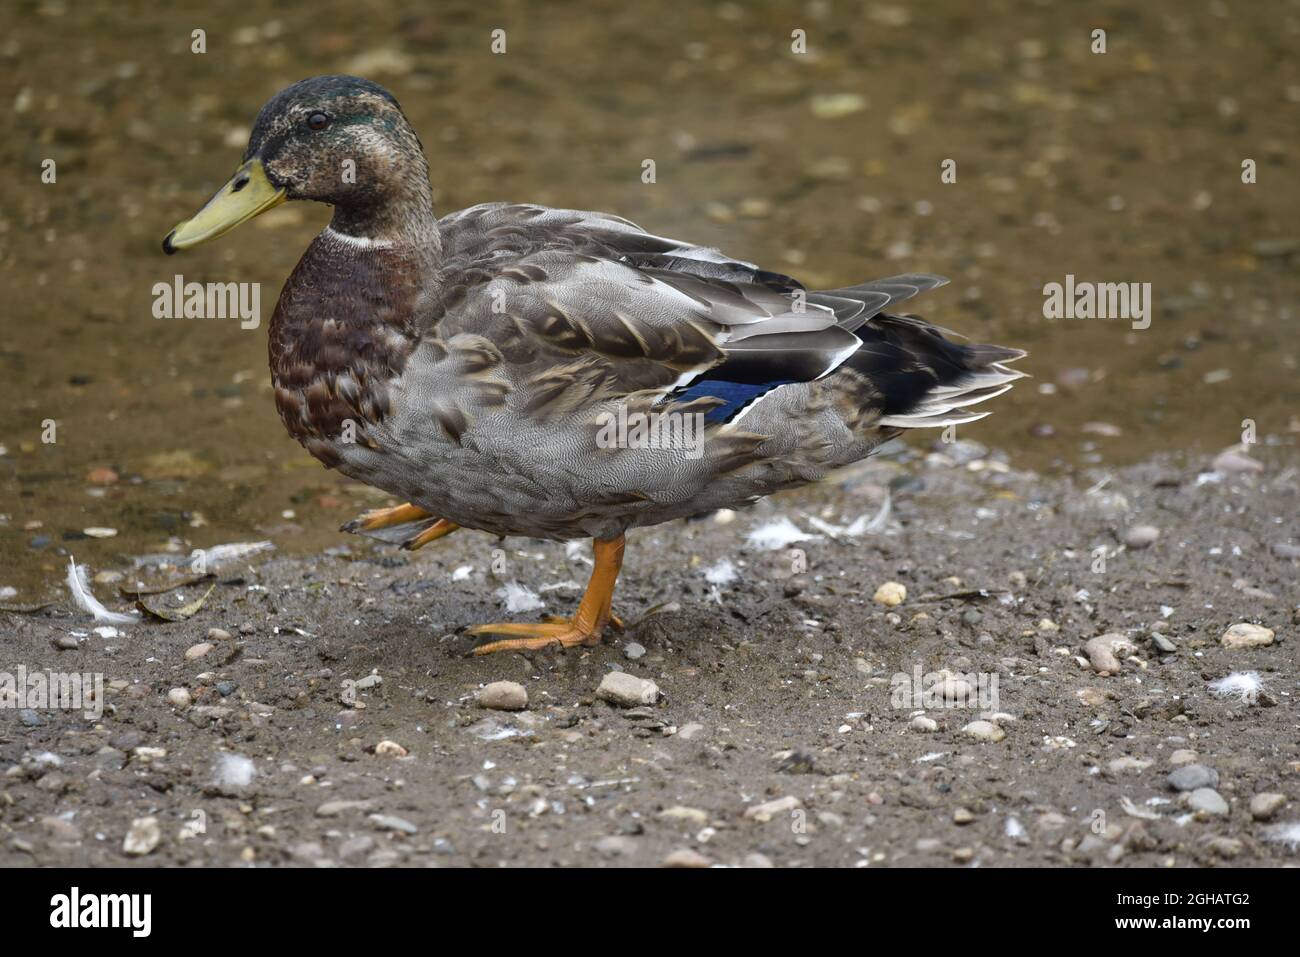 Nahaufnahme, linkes Profil, Ganzkörperporträt einer verfinsterten Drake Mallard Duck (Anas platyrhynchos), die in flachem Wasser steht und das rechte Bein angehoben hat Stockfoto